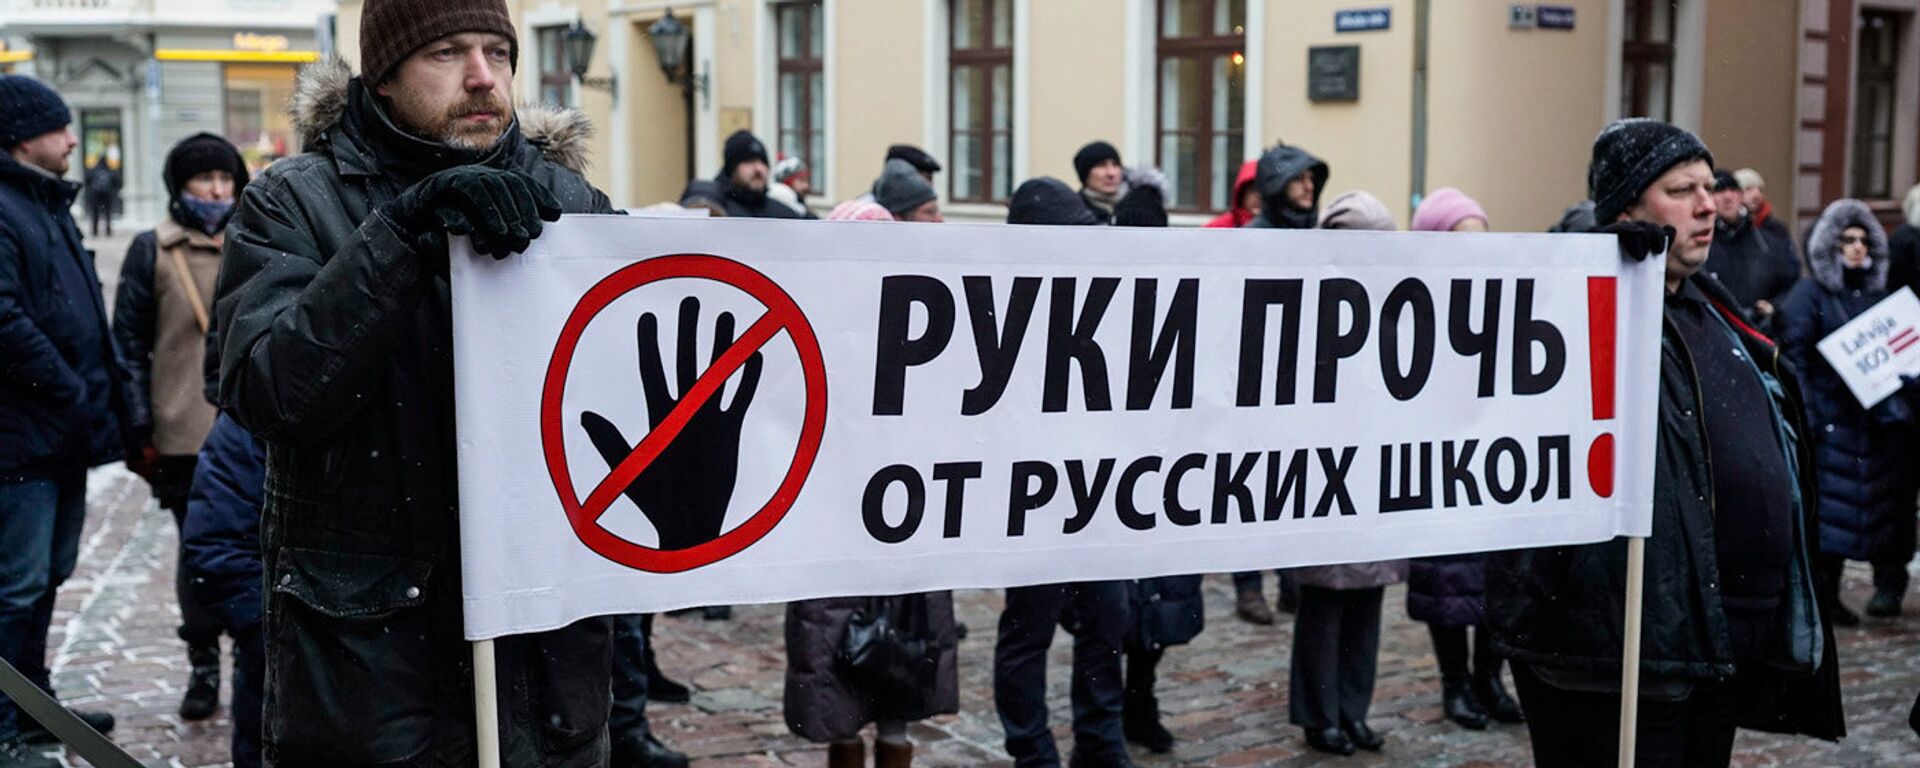 Акция в защиту русских школ у здания Сейма, 8 февраля 2018 года - Sputnik Латвия, 1920, 27.11.2021